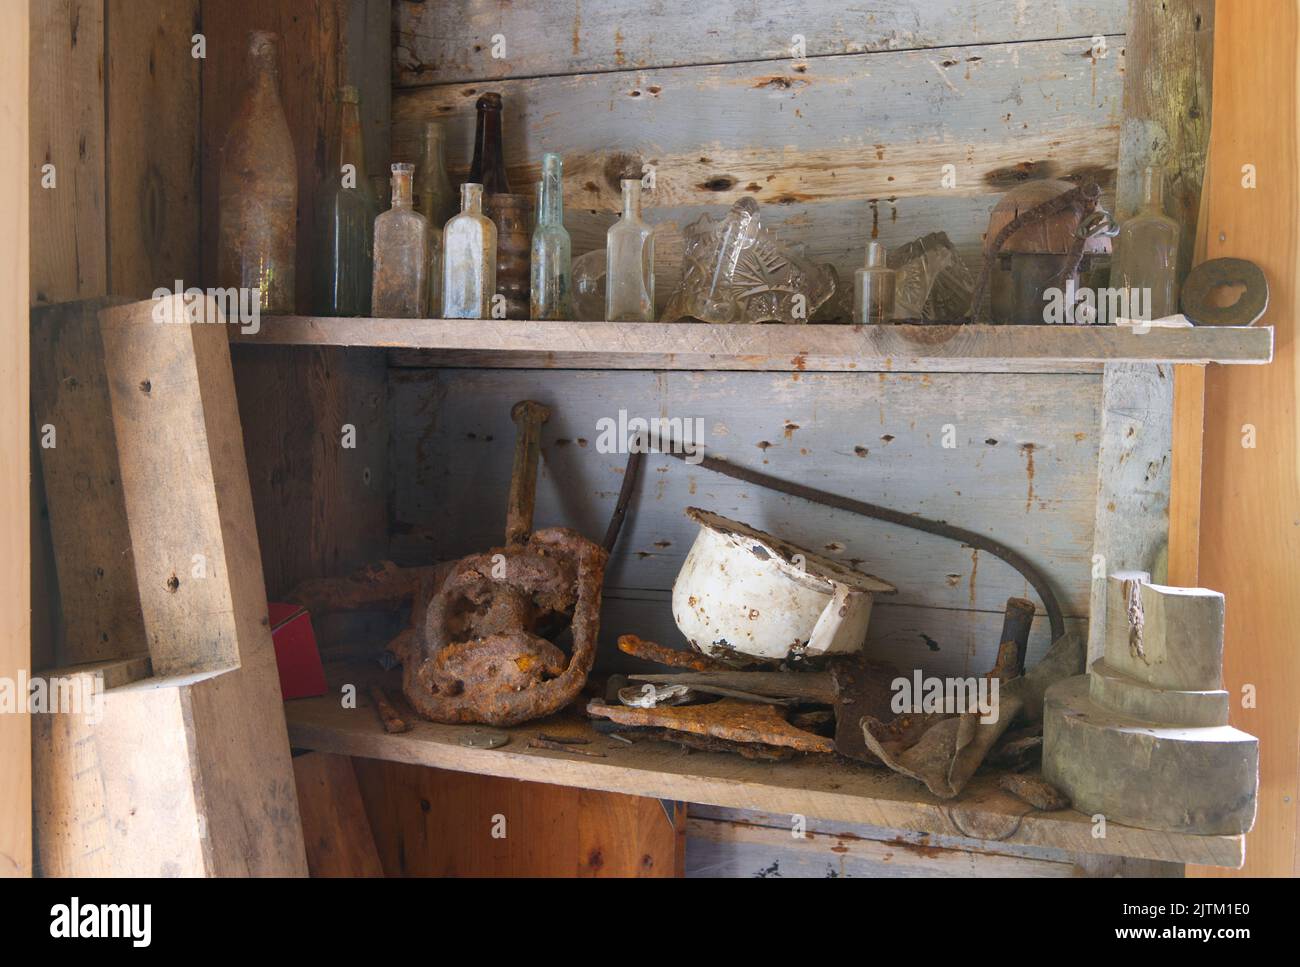 Artículos en una estantería del histórico Brewster Grist Mill en Cape Cod Foto de stock